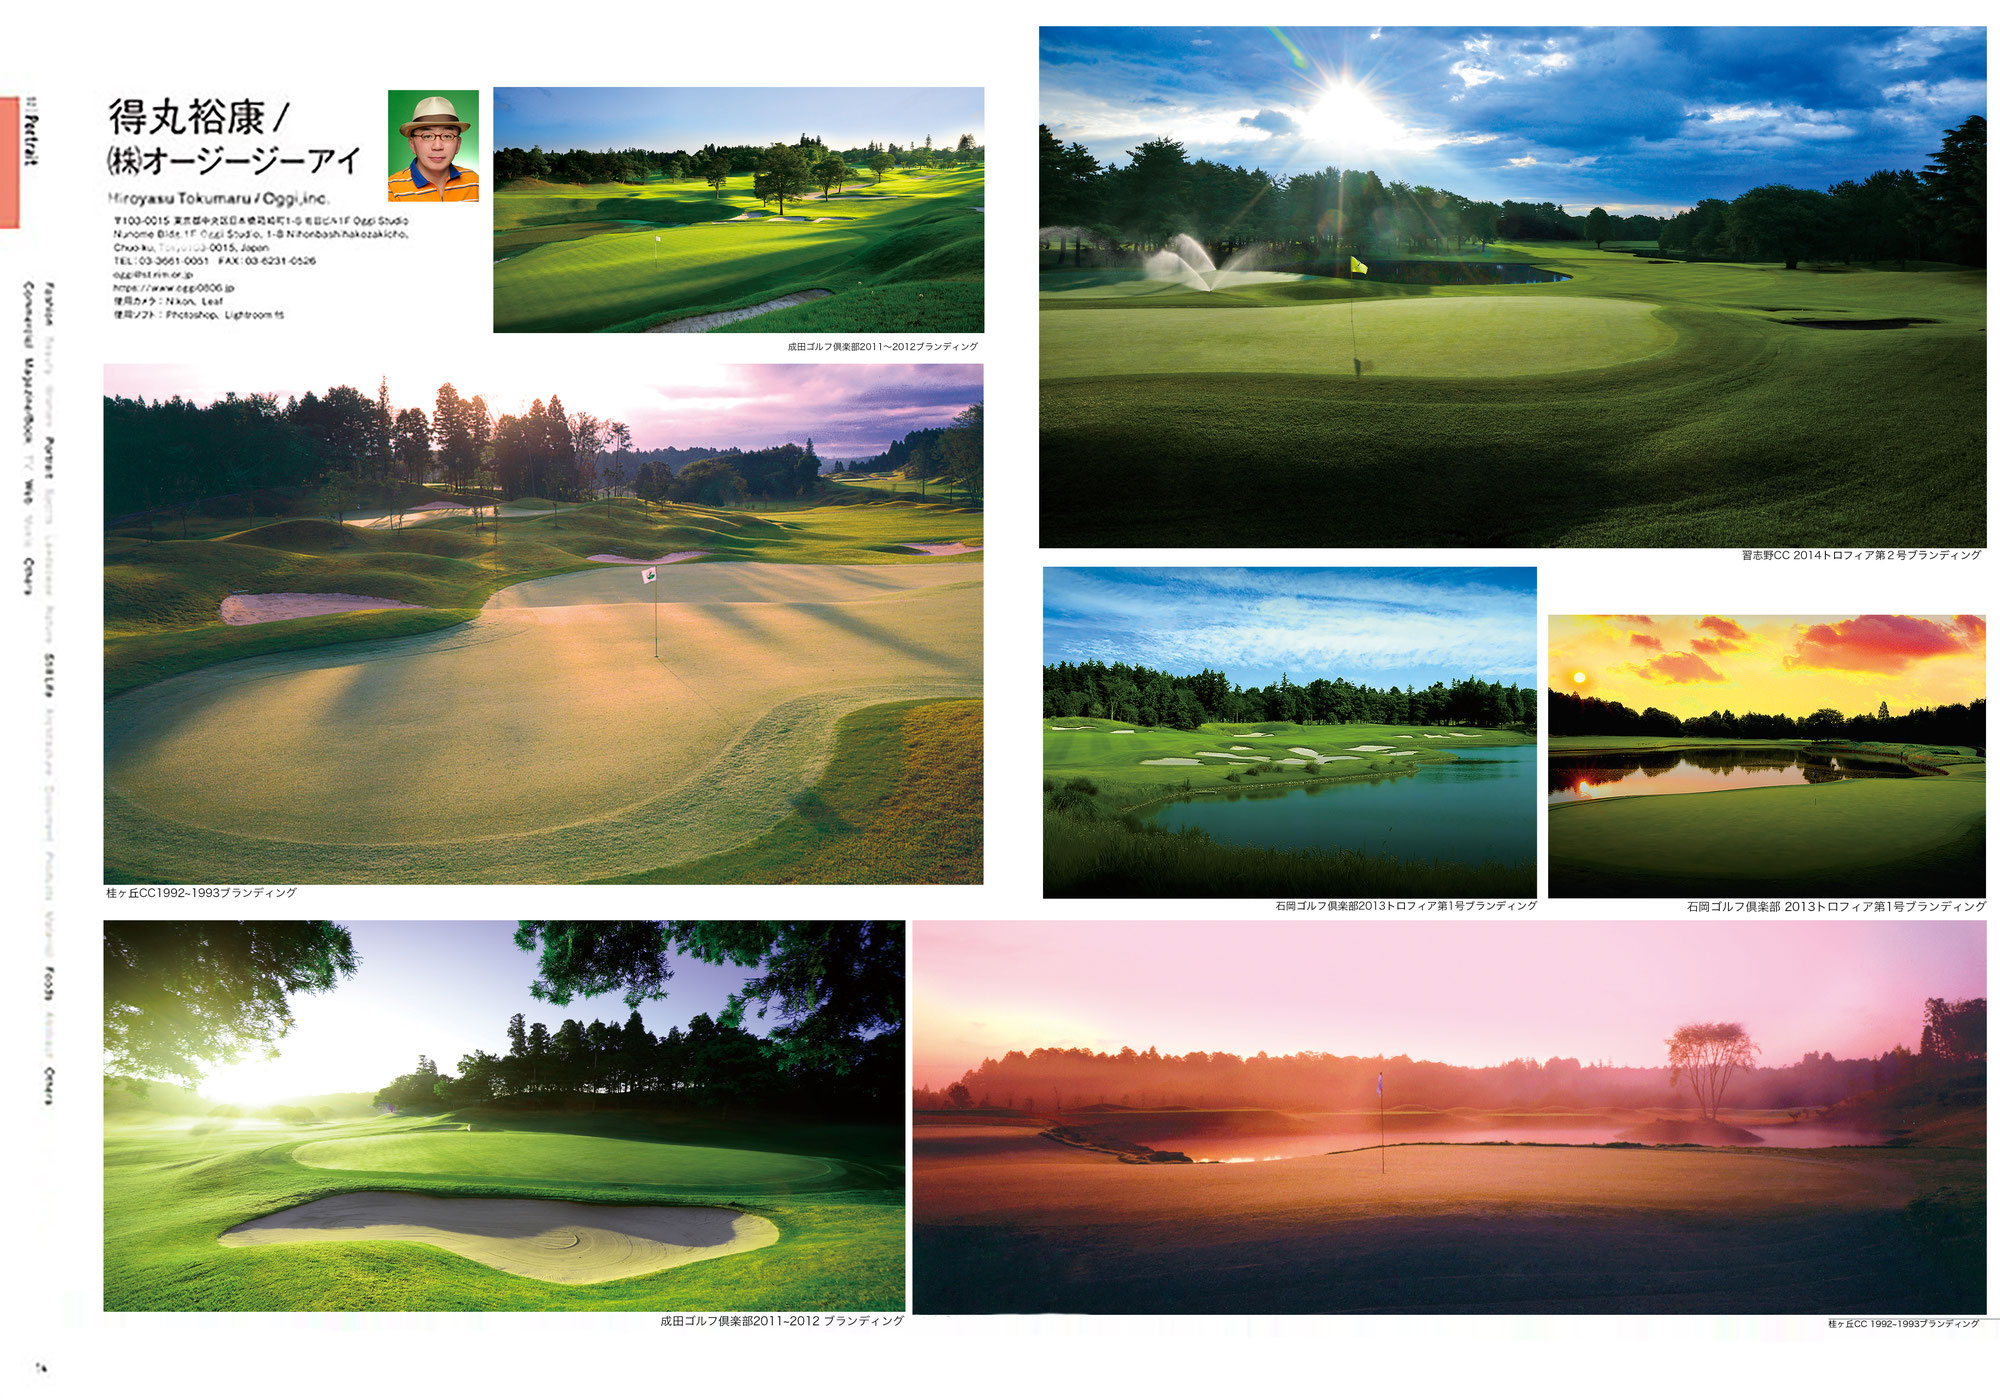 ゴルフコースイメージ撮影が『プロカメラマンファイル2022』で掲載されました